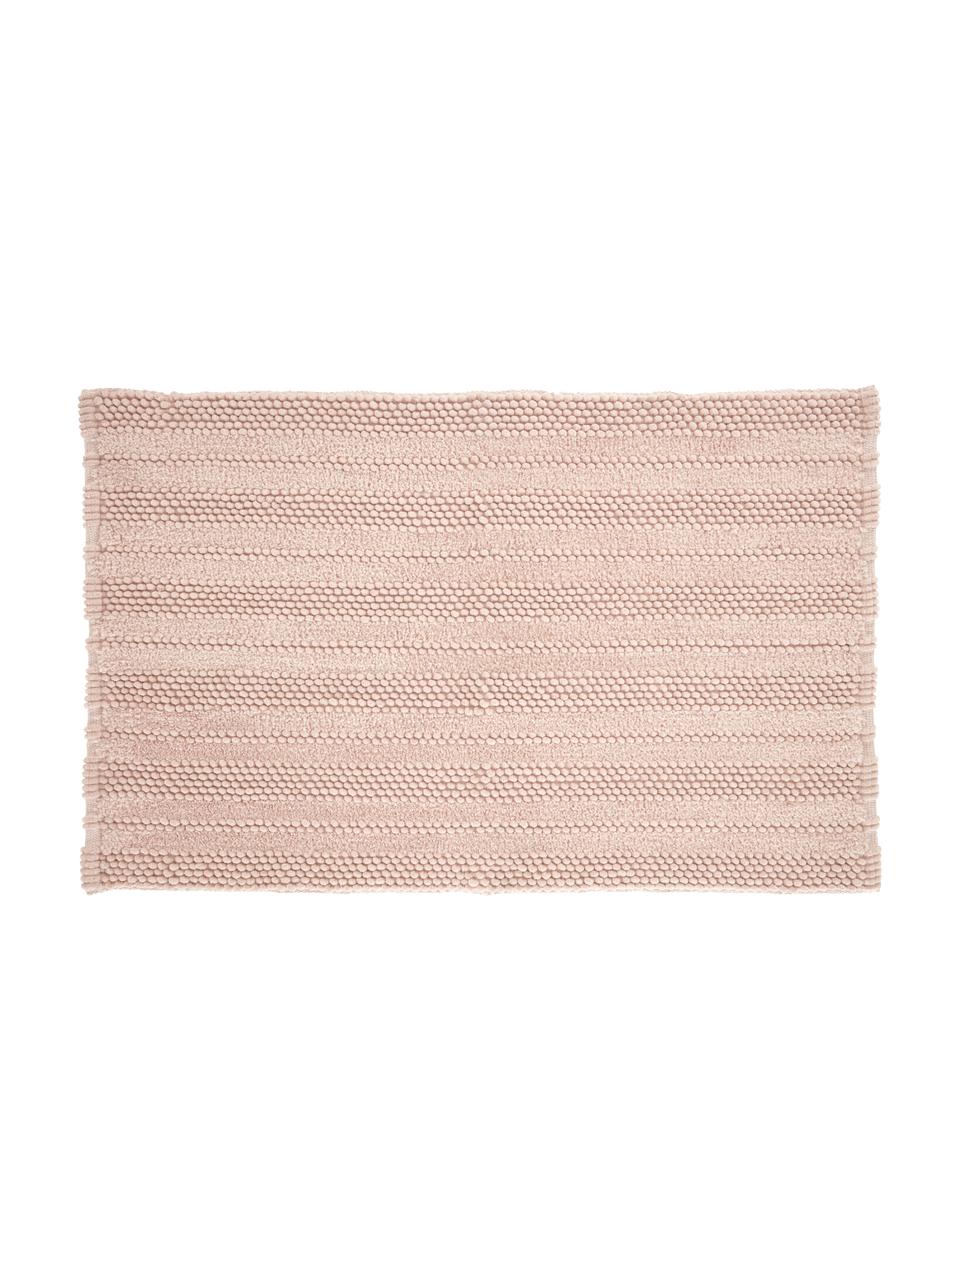 Měkký koupelnový kobereček s různou výškou vzoru Nea, různé velikosti, Růžová